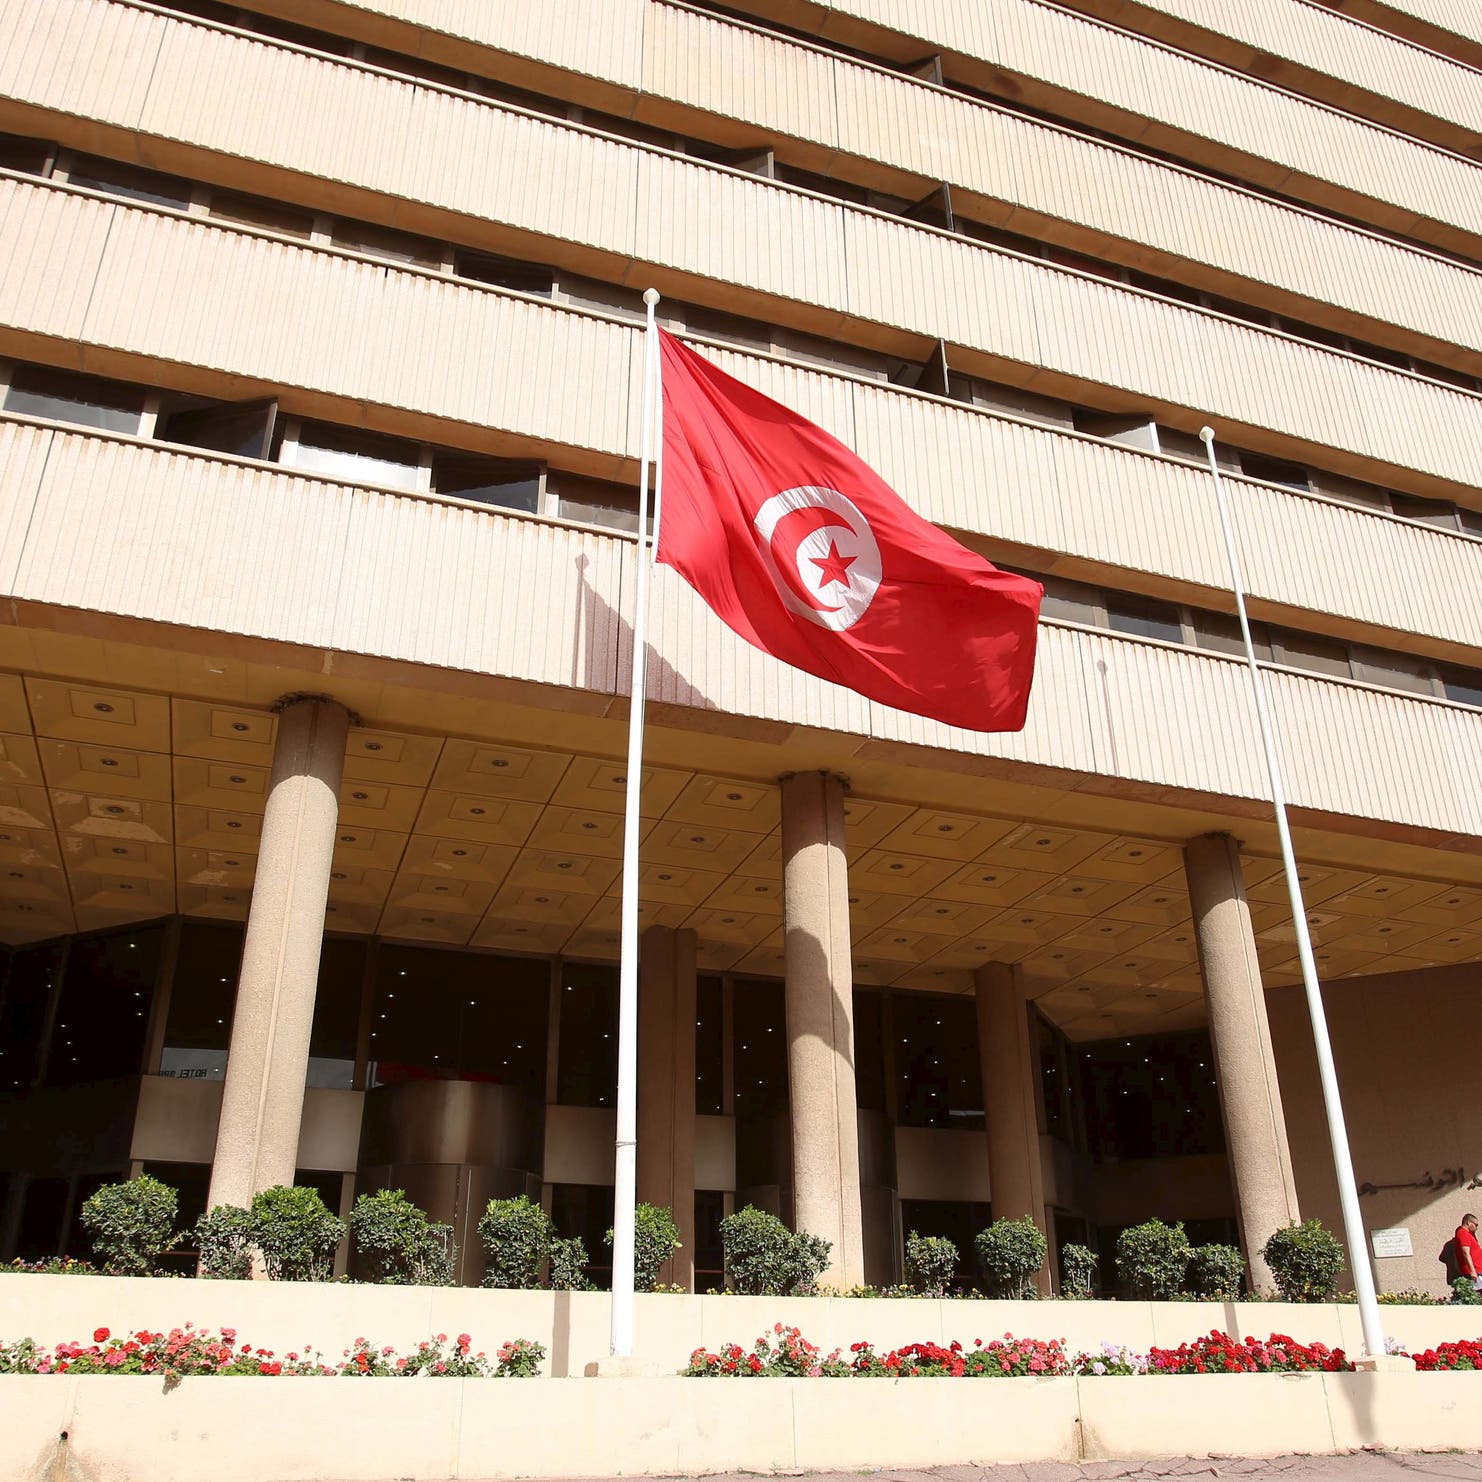 الدينار التونسي يهبط لأدنى مستوى مقابل الدولار في 3 سنوات 